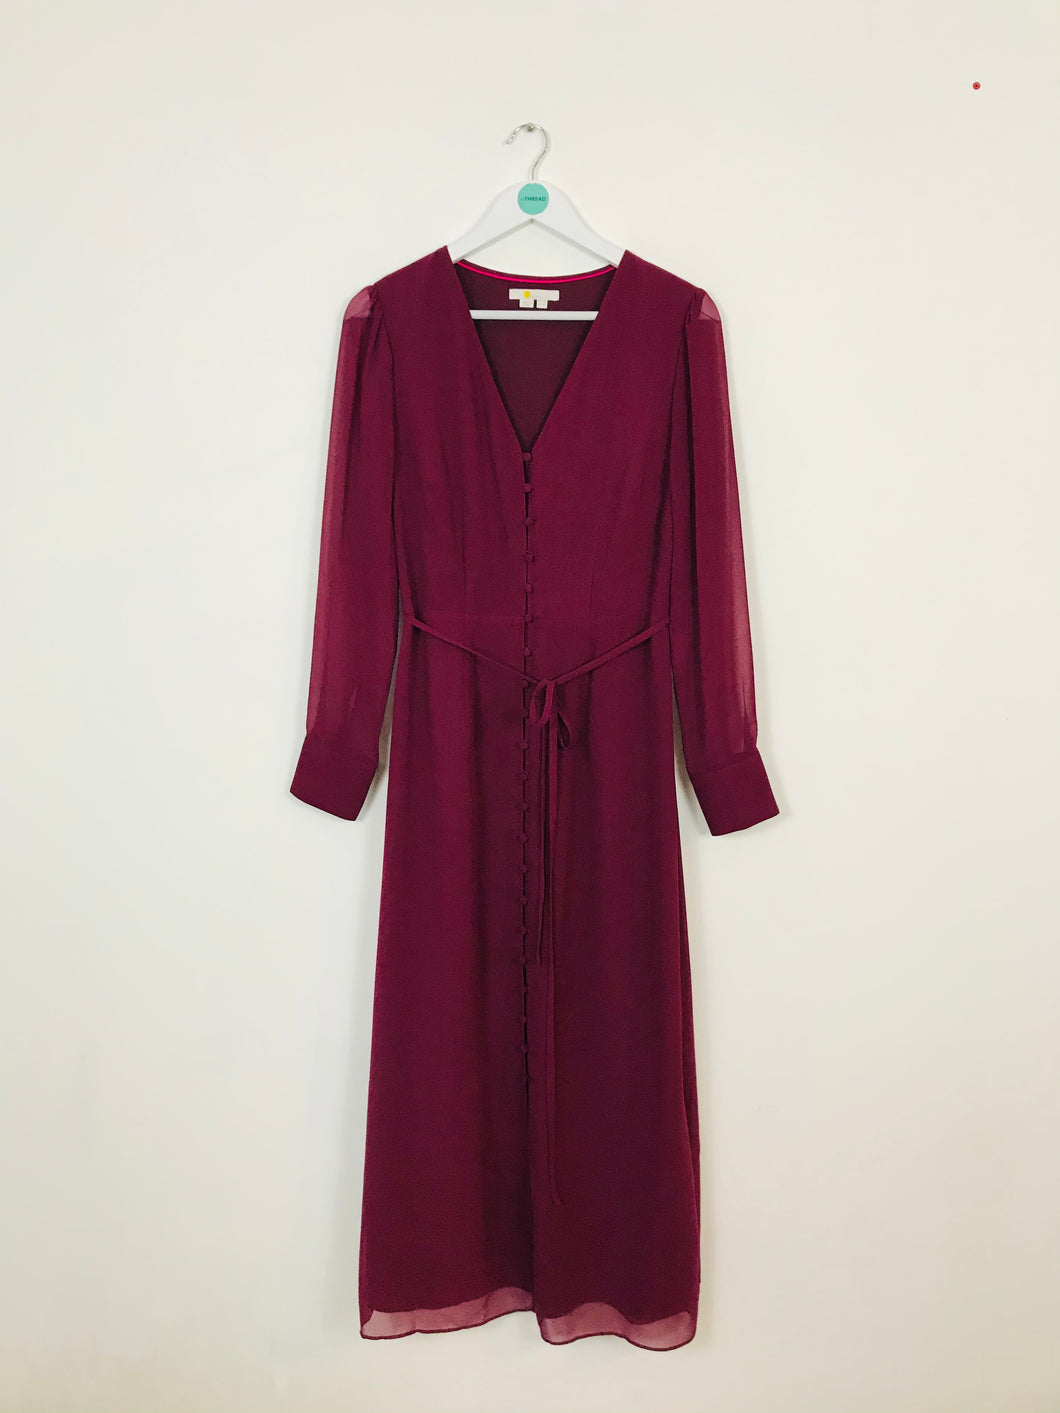 Boden Womens Button up Maxi Aline Dress | UK 12 | Burgundy Red